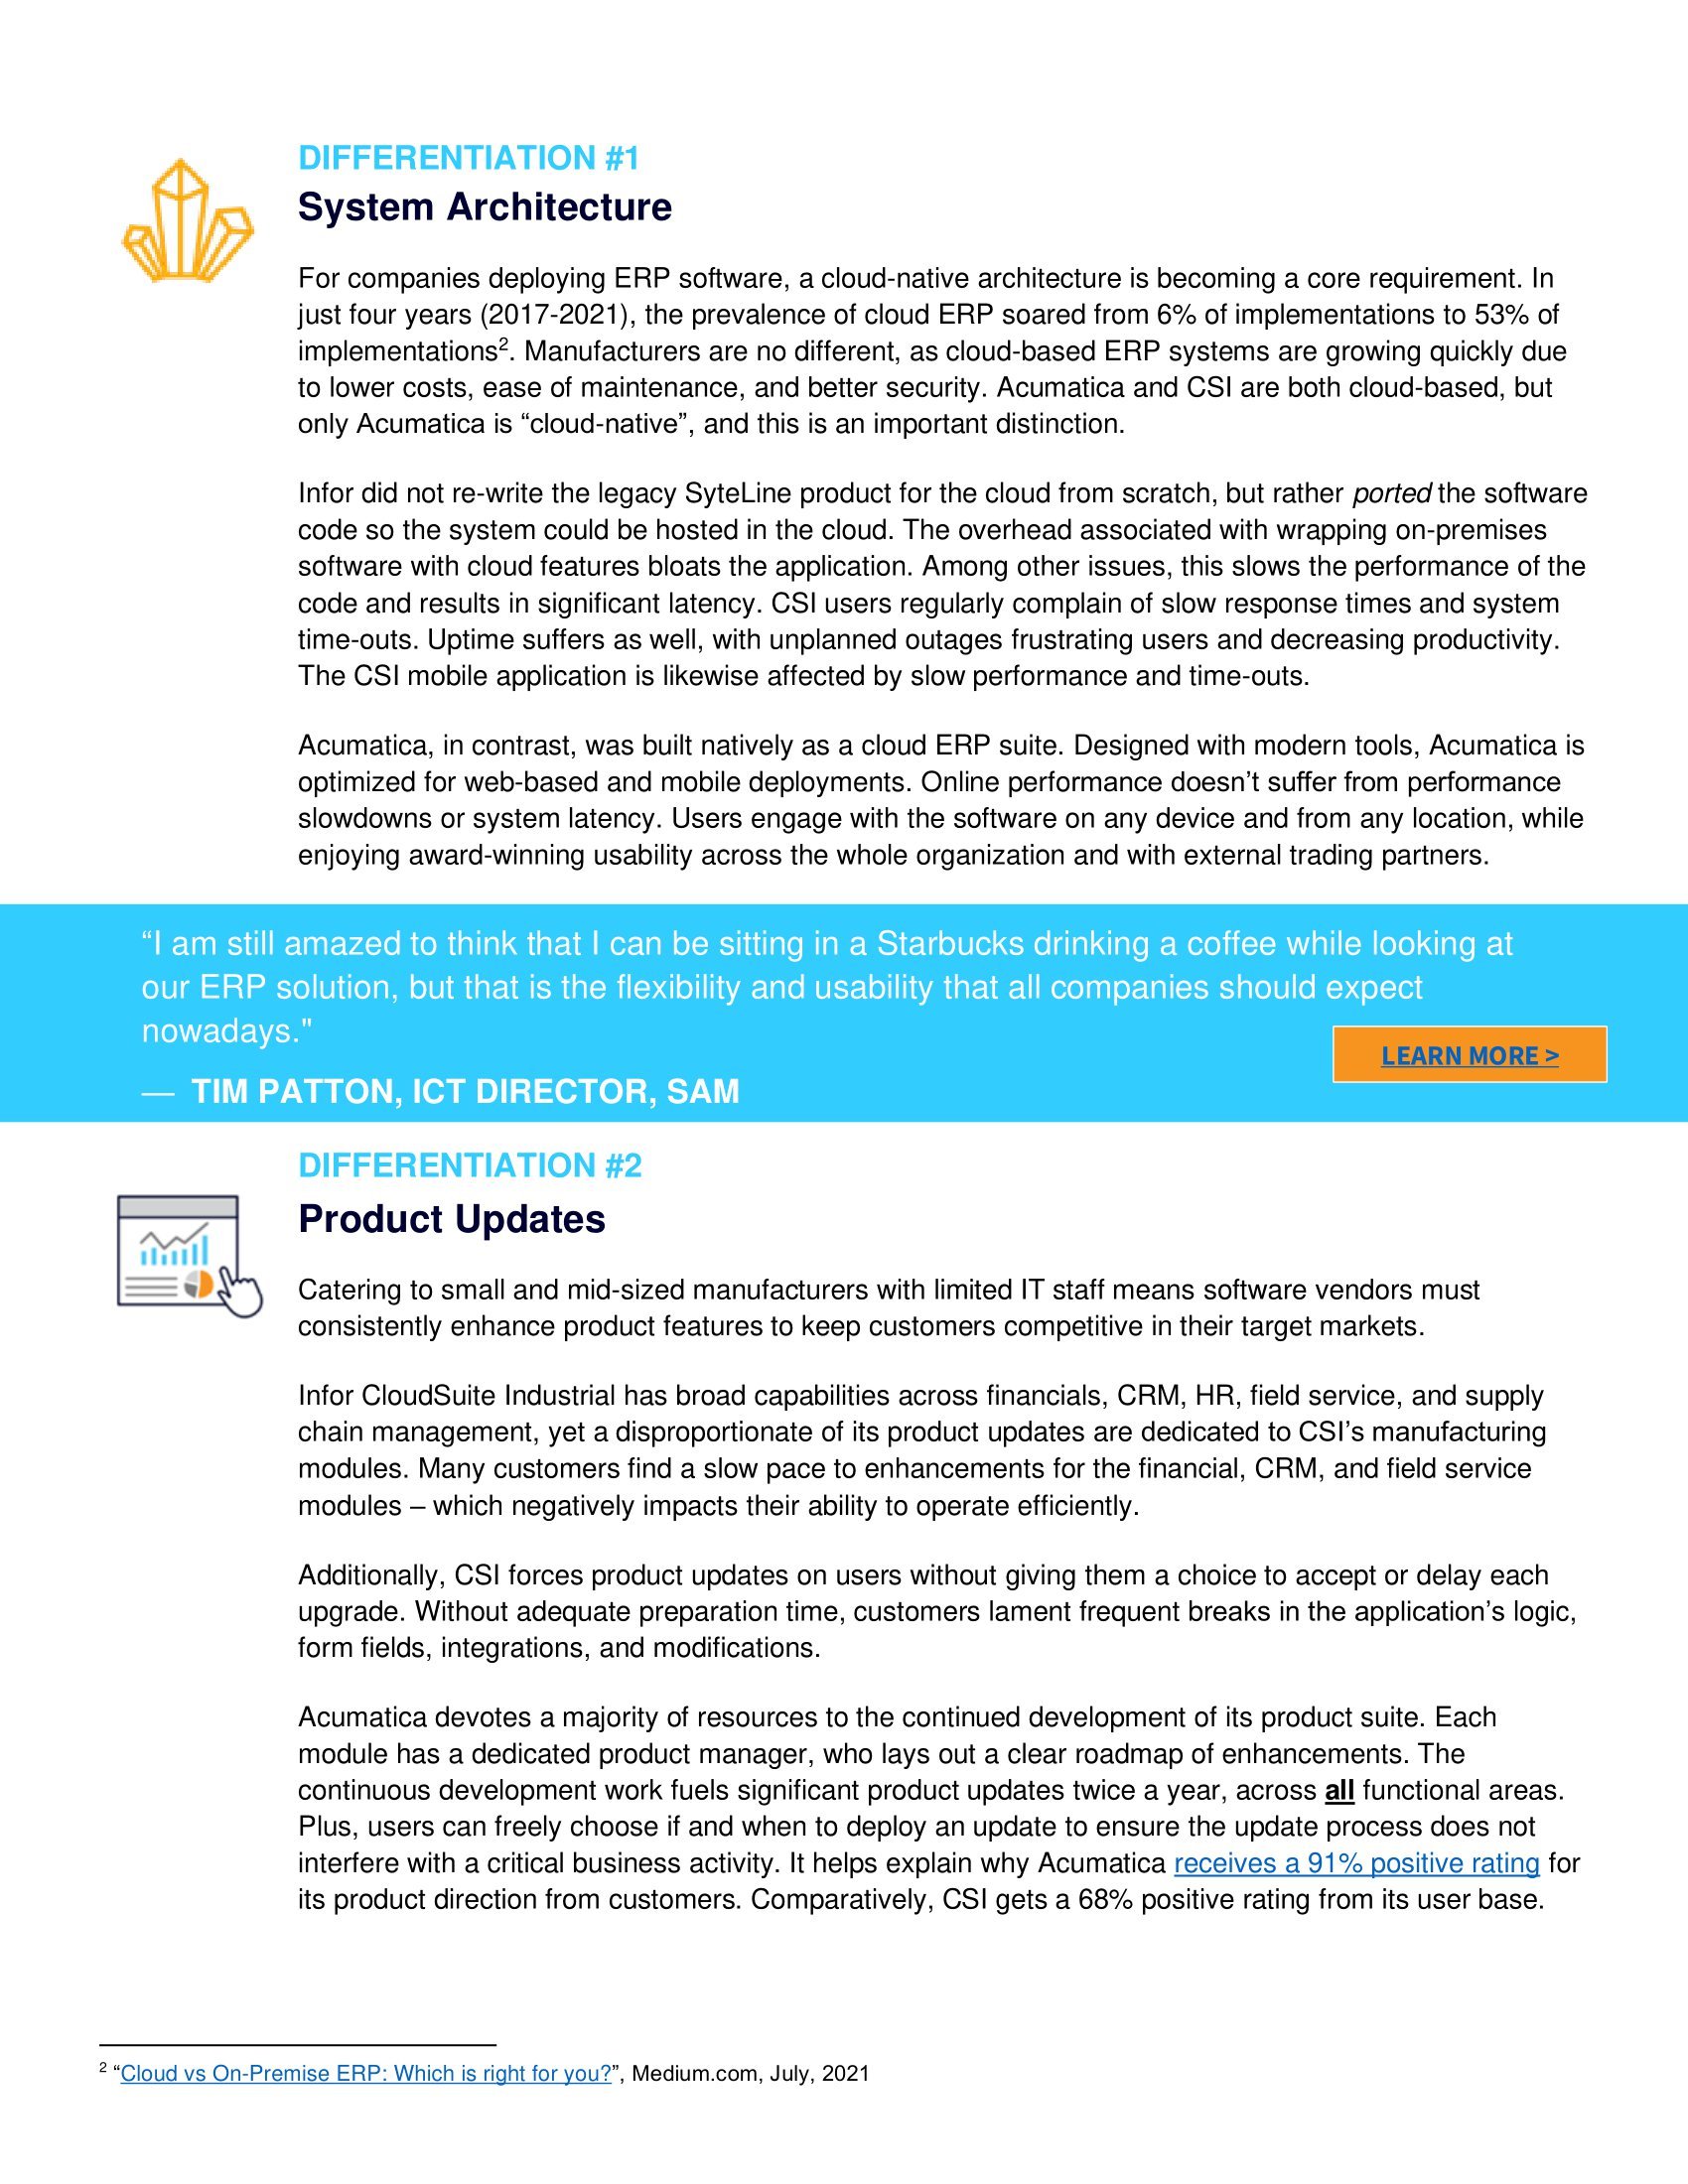 Acumatica vs Infor CloudSuite Industrial : Passer au crible les différences pour les fabricants, page 1